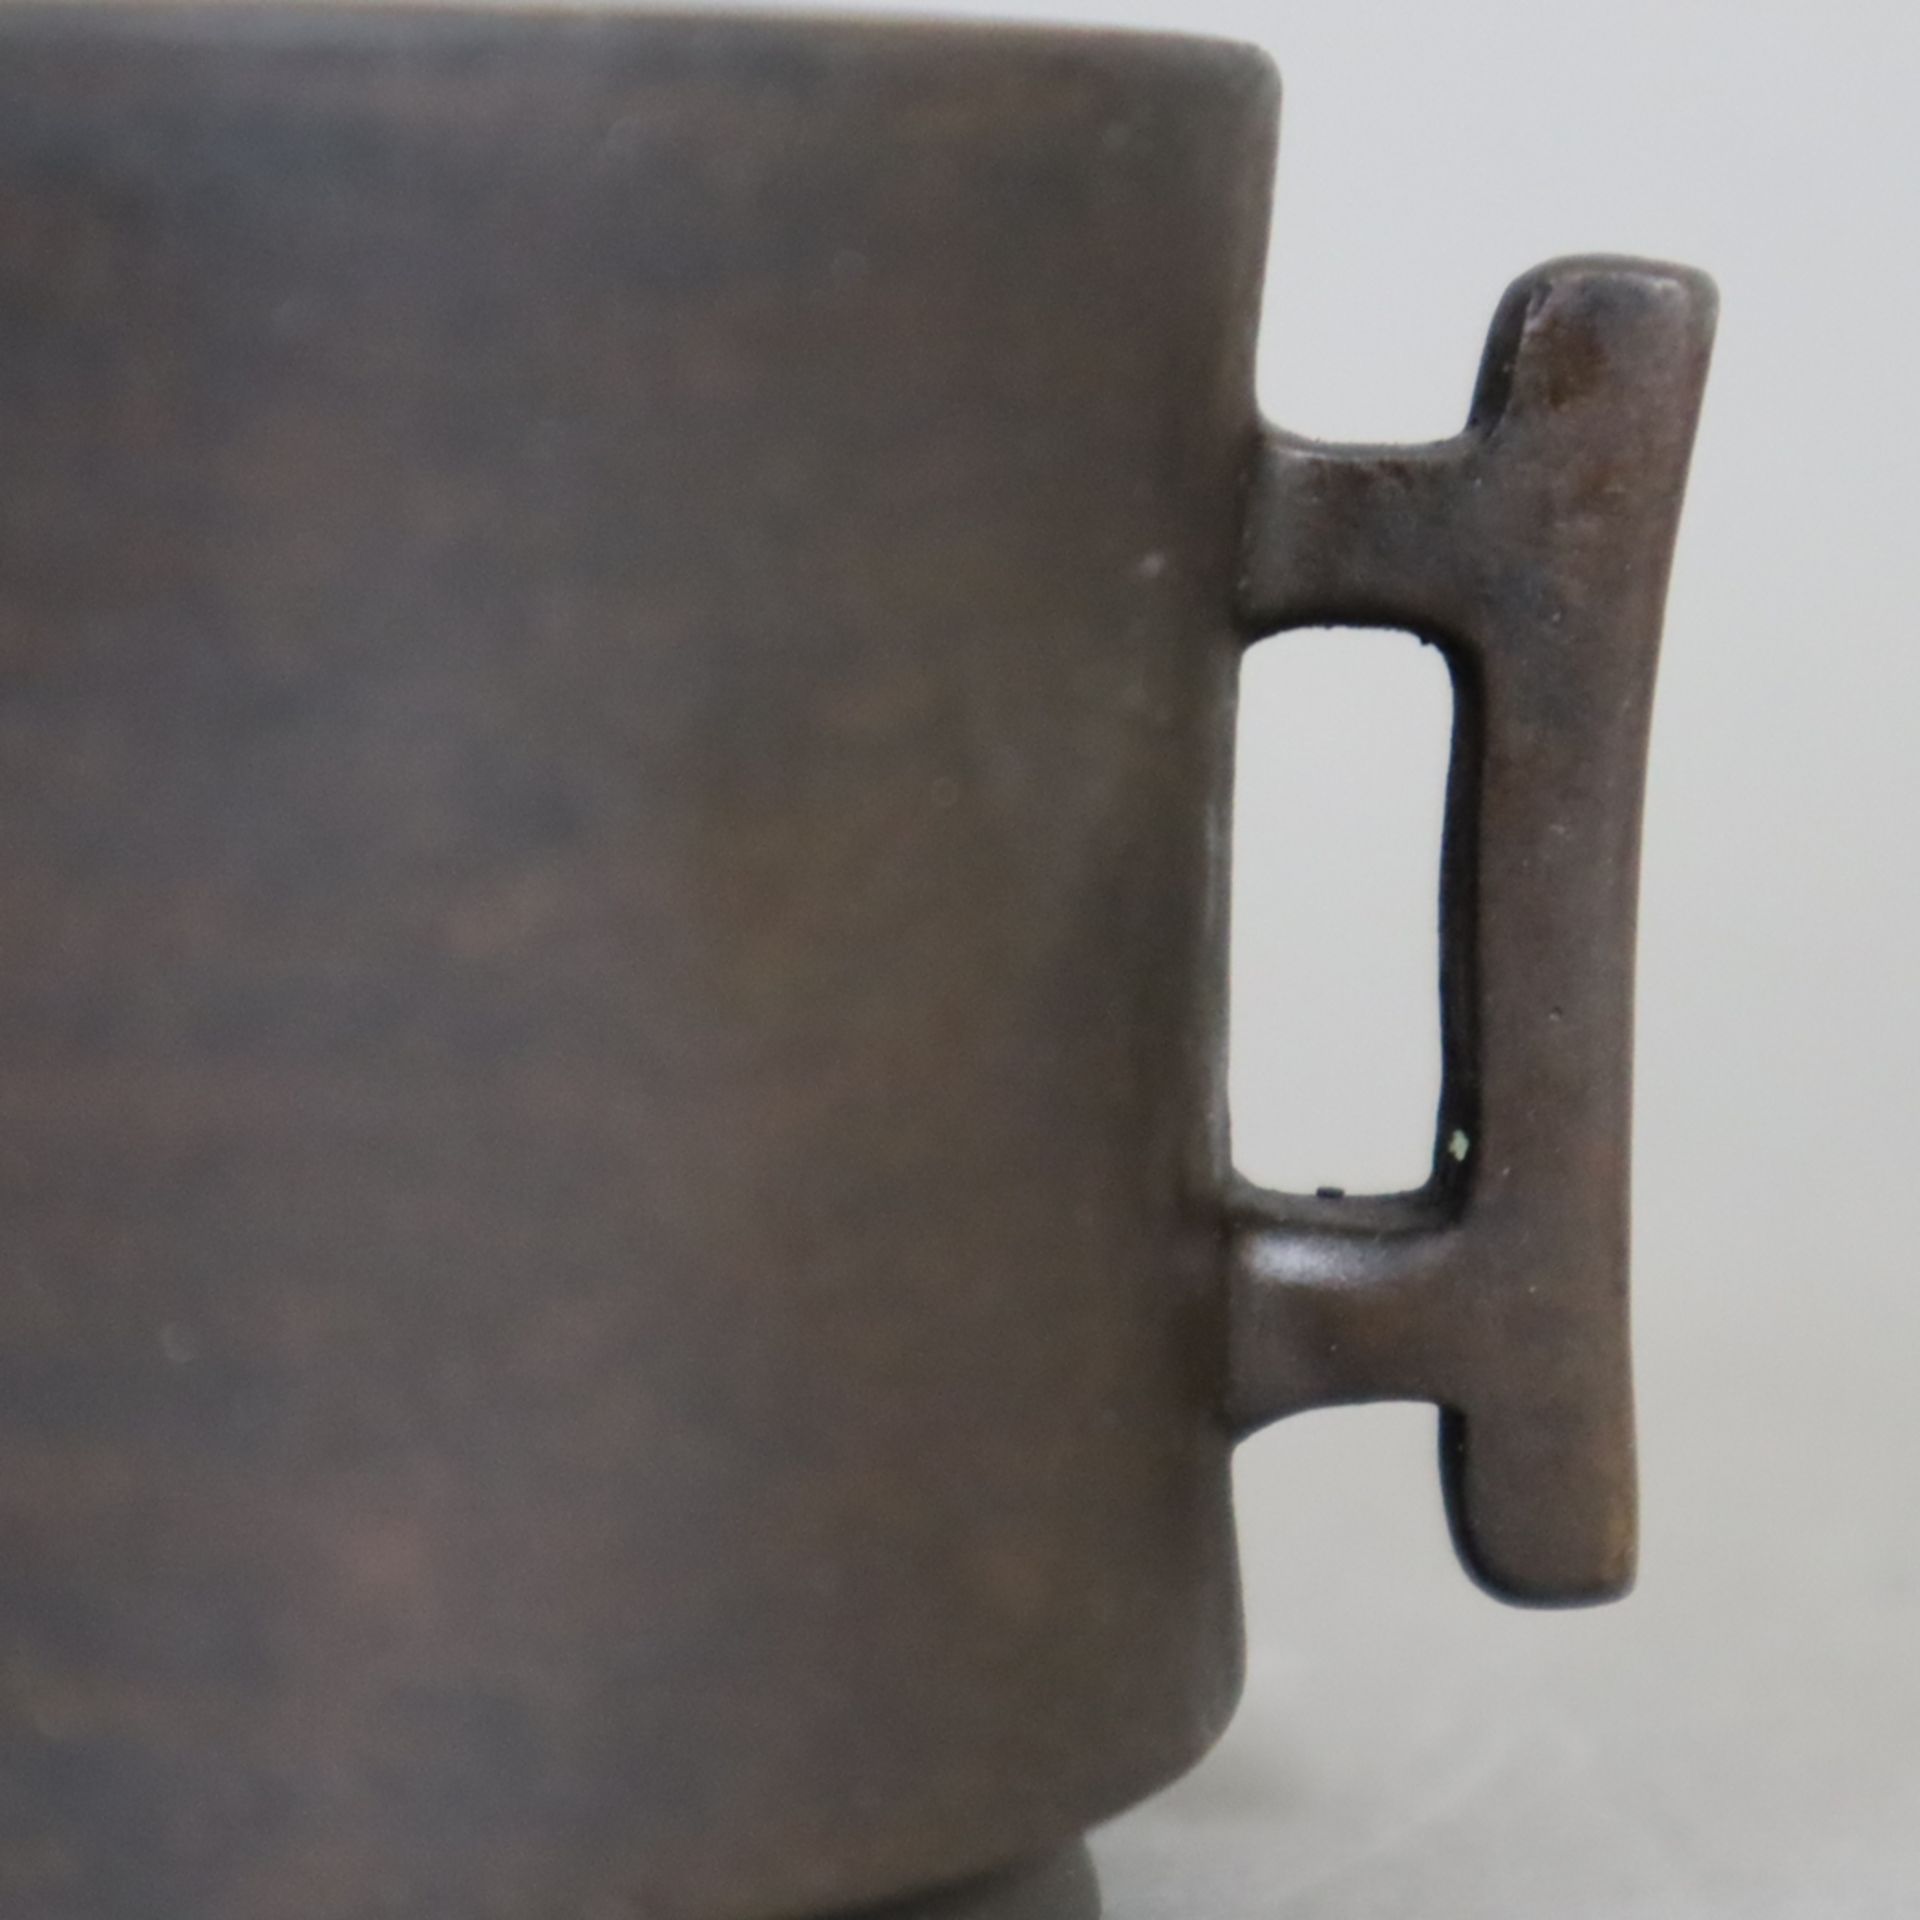 Kleines Räuchergefäß - Bronze mit dunkelbrauner Patina, zylindrisches leicht tailliertes Räuchergef - Bild 3 aus 6